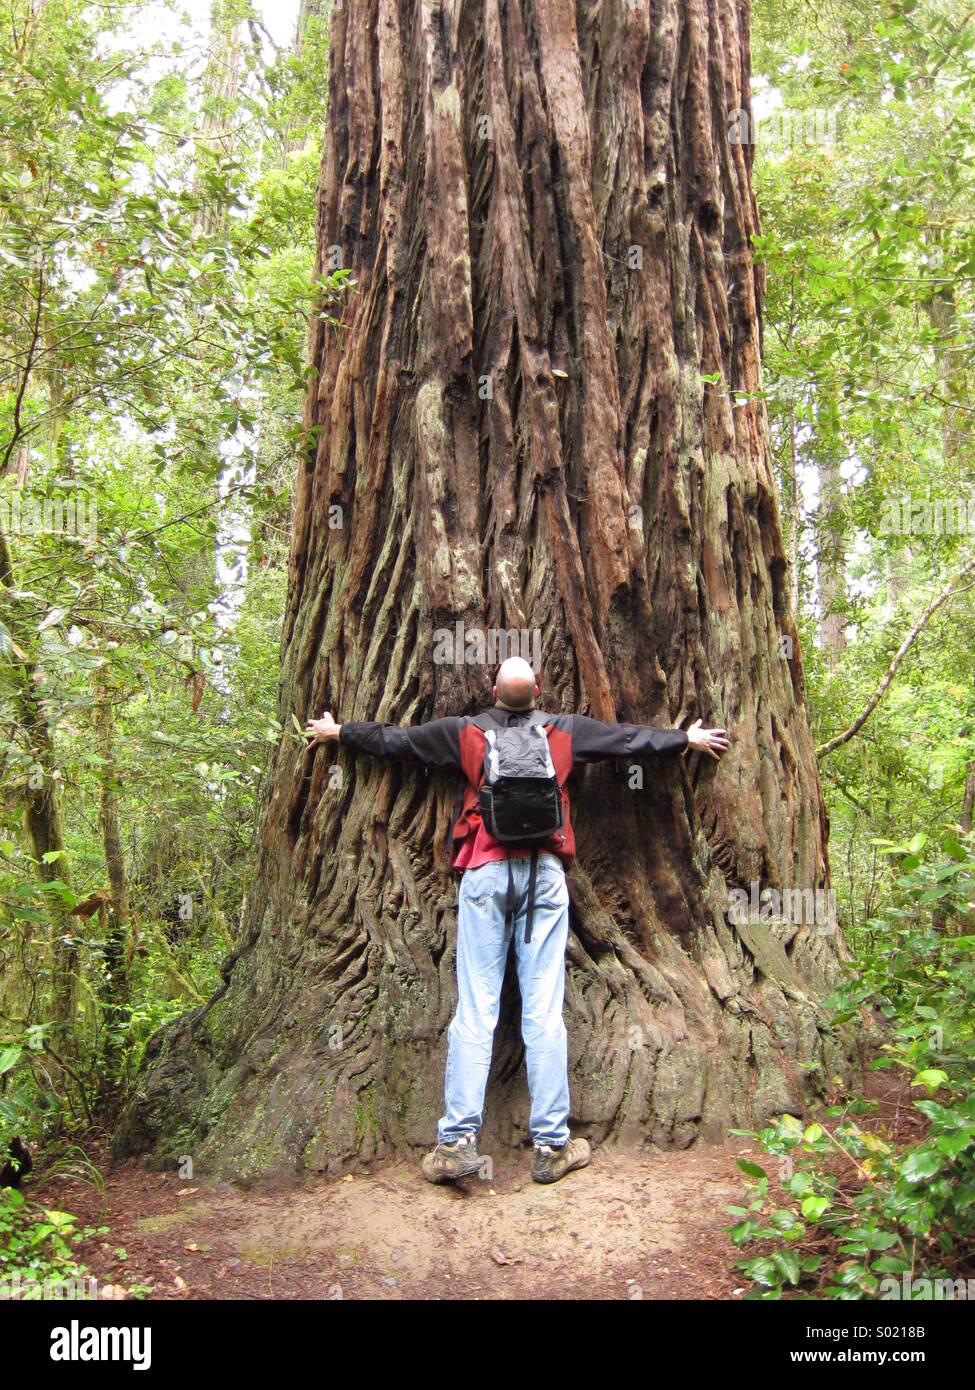 Tree hugger in Redwoods National Park, California Stock Photo